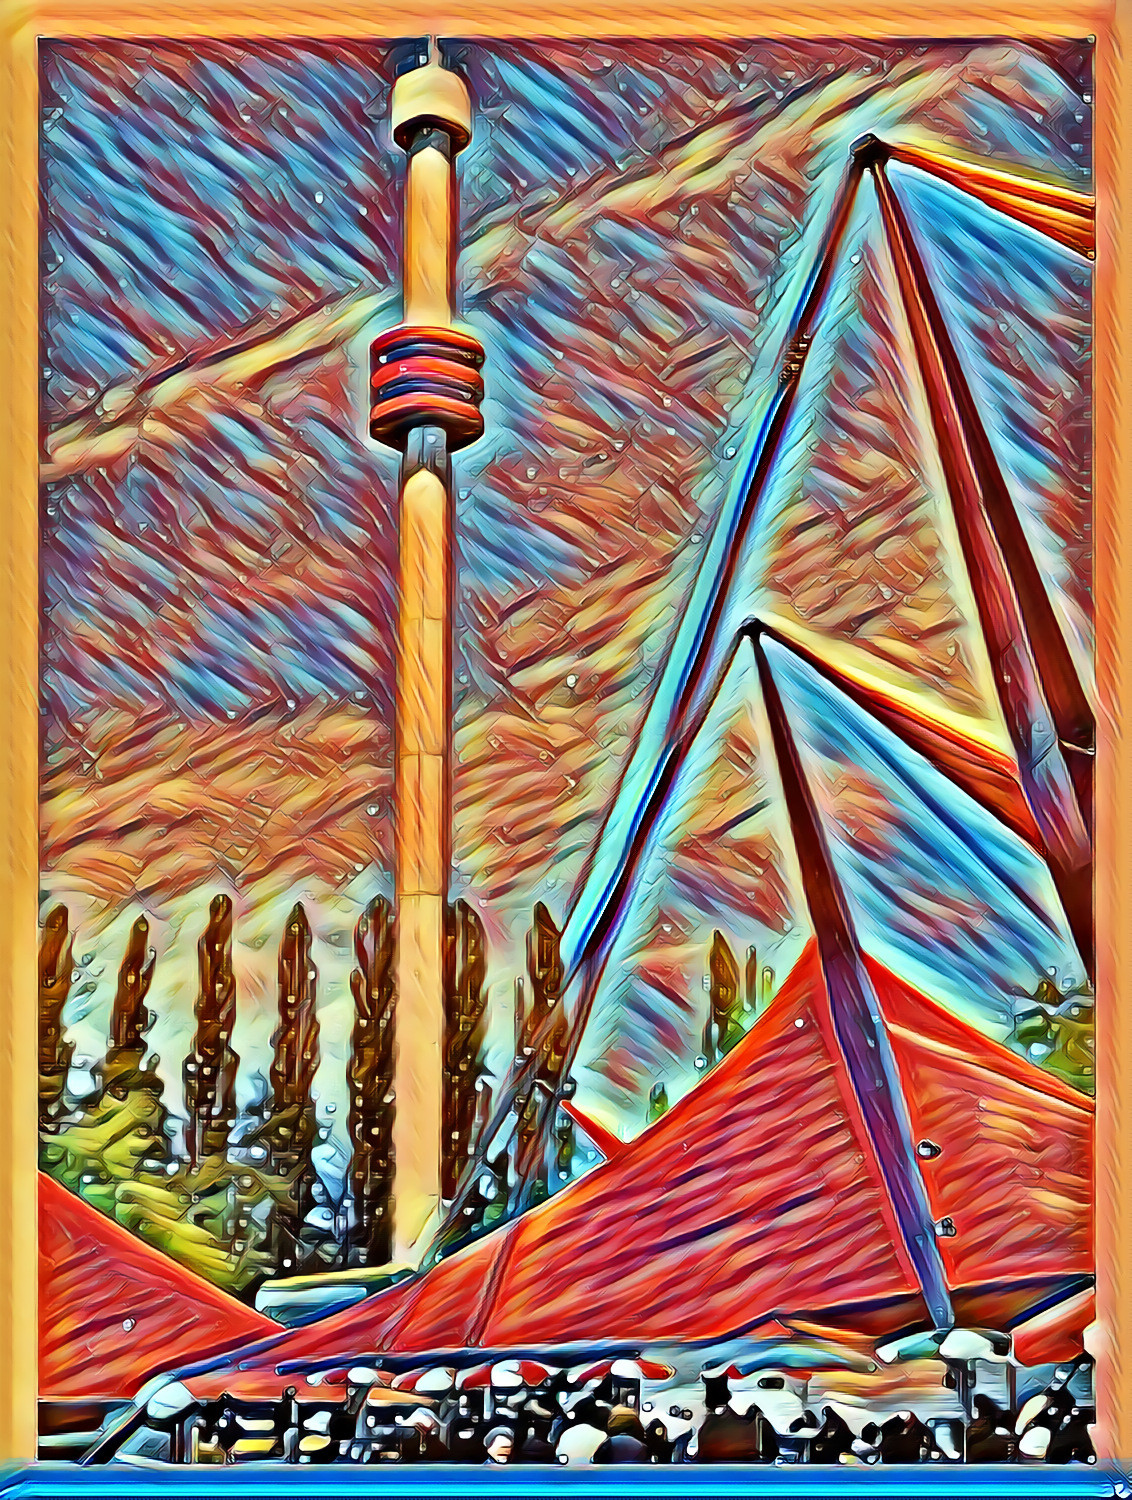 Tower of La Ronde, Expo 67 (Montreal) / Essay No.3